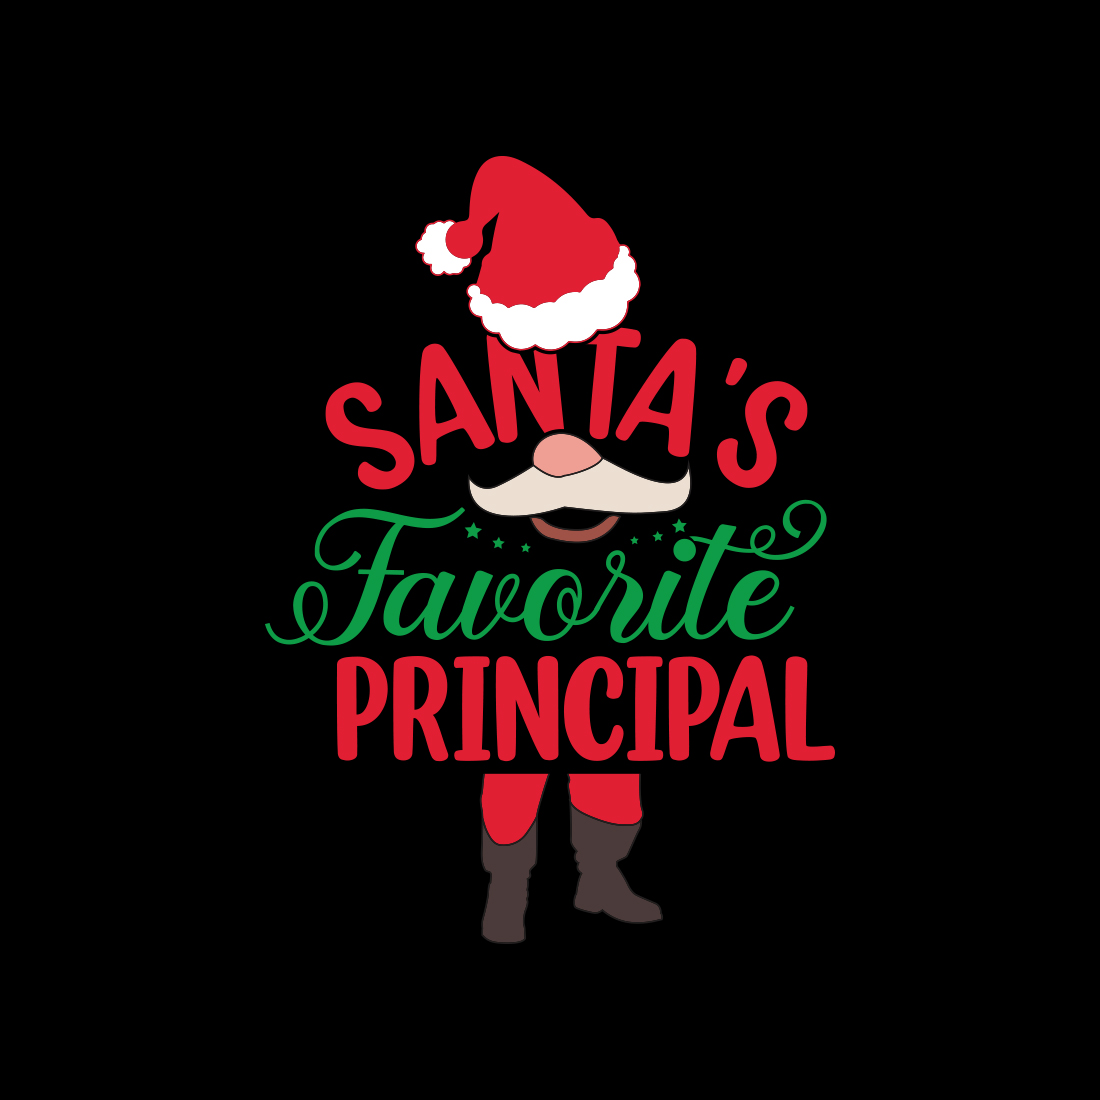 Santa's Favorite Principal T-shirt design preview image.